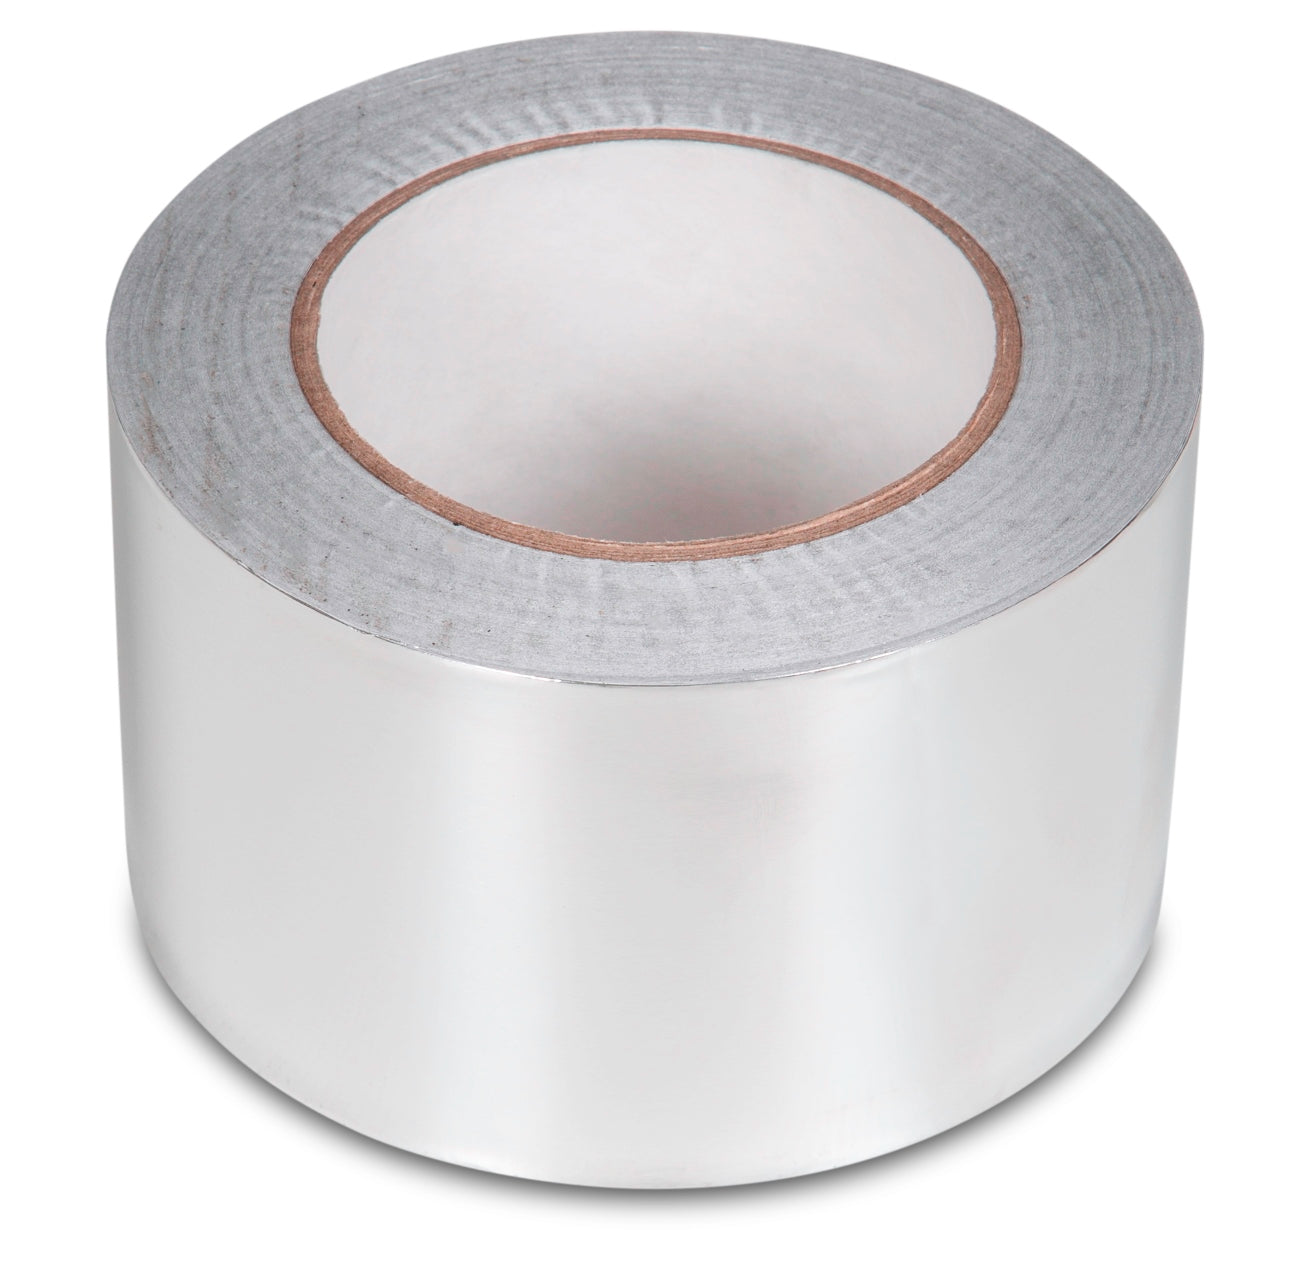 Aluminium Foil Tape 75mm x 45m